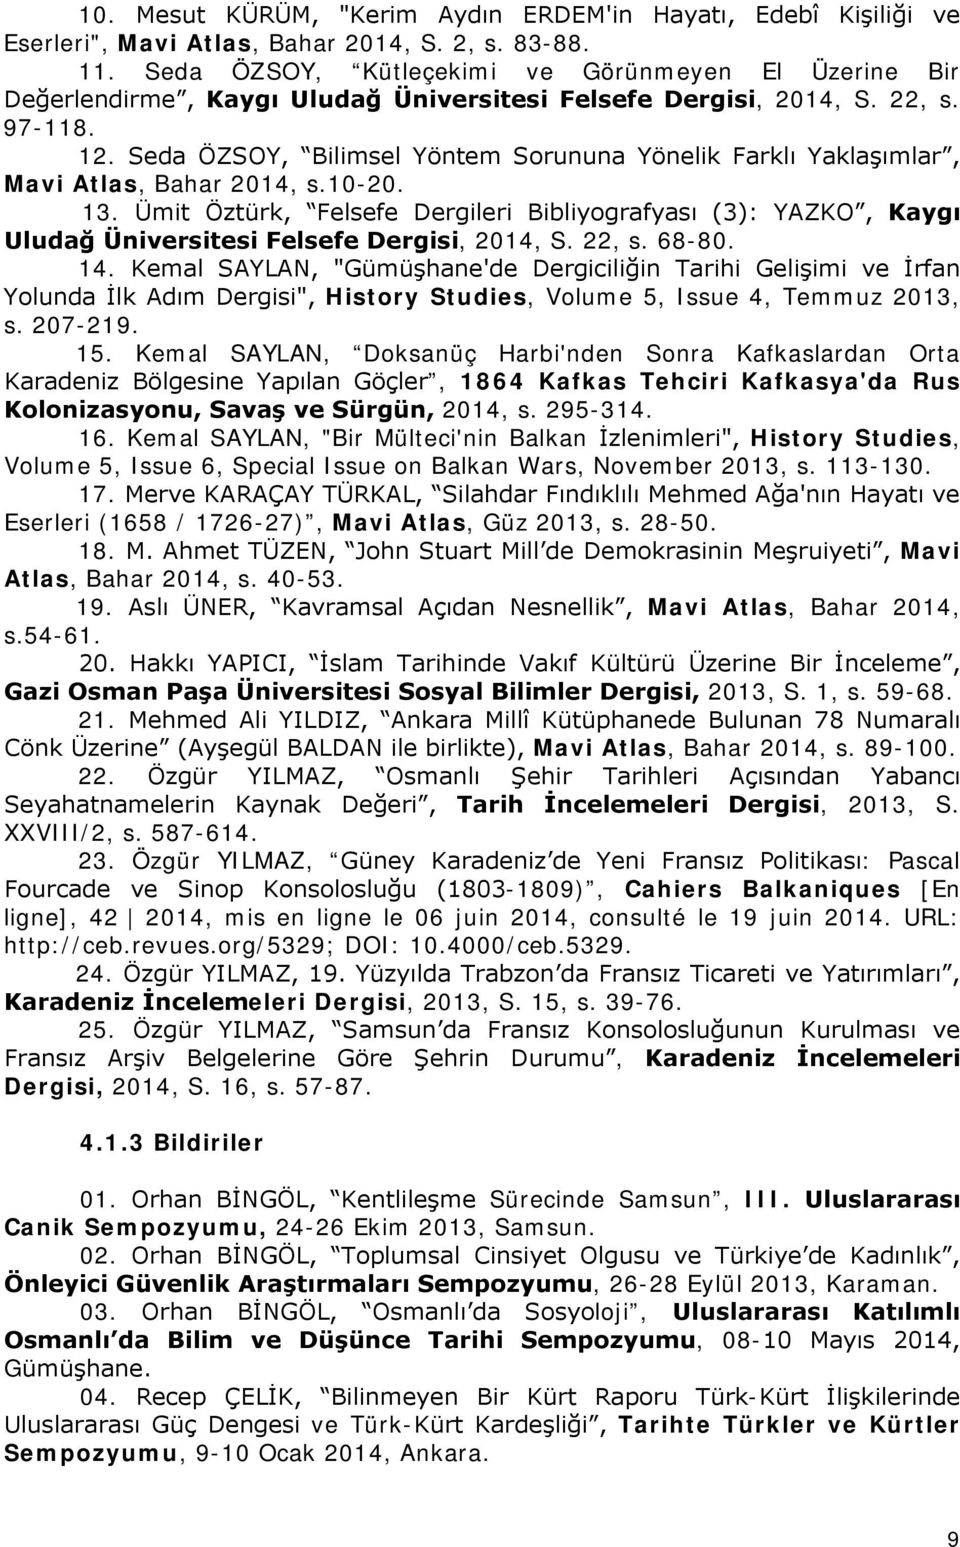 Seda ÖZSOY, Bilimsel Yöntem Sorununa Yönelik Farklı Yaklaşımlar, Mavi Atlas, Bahar 2014, s.10-20. 13.